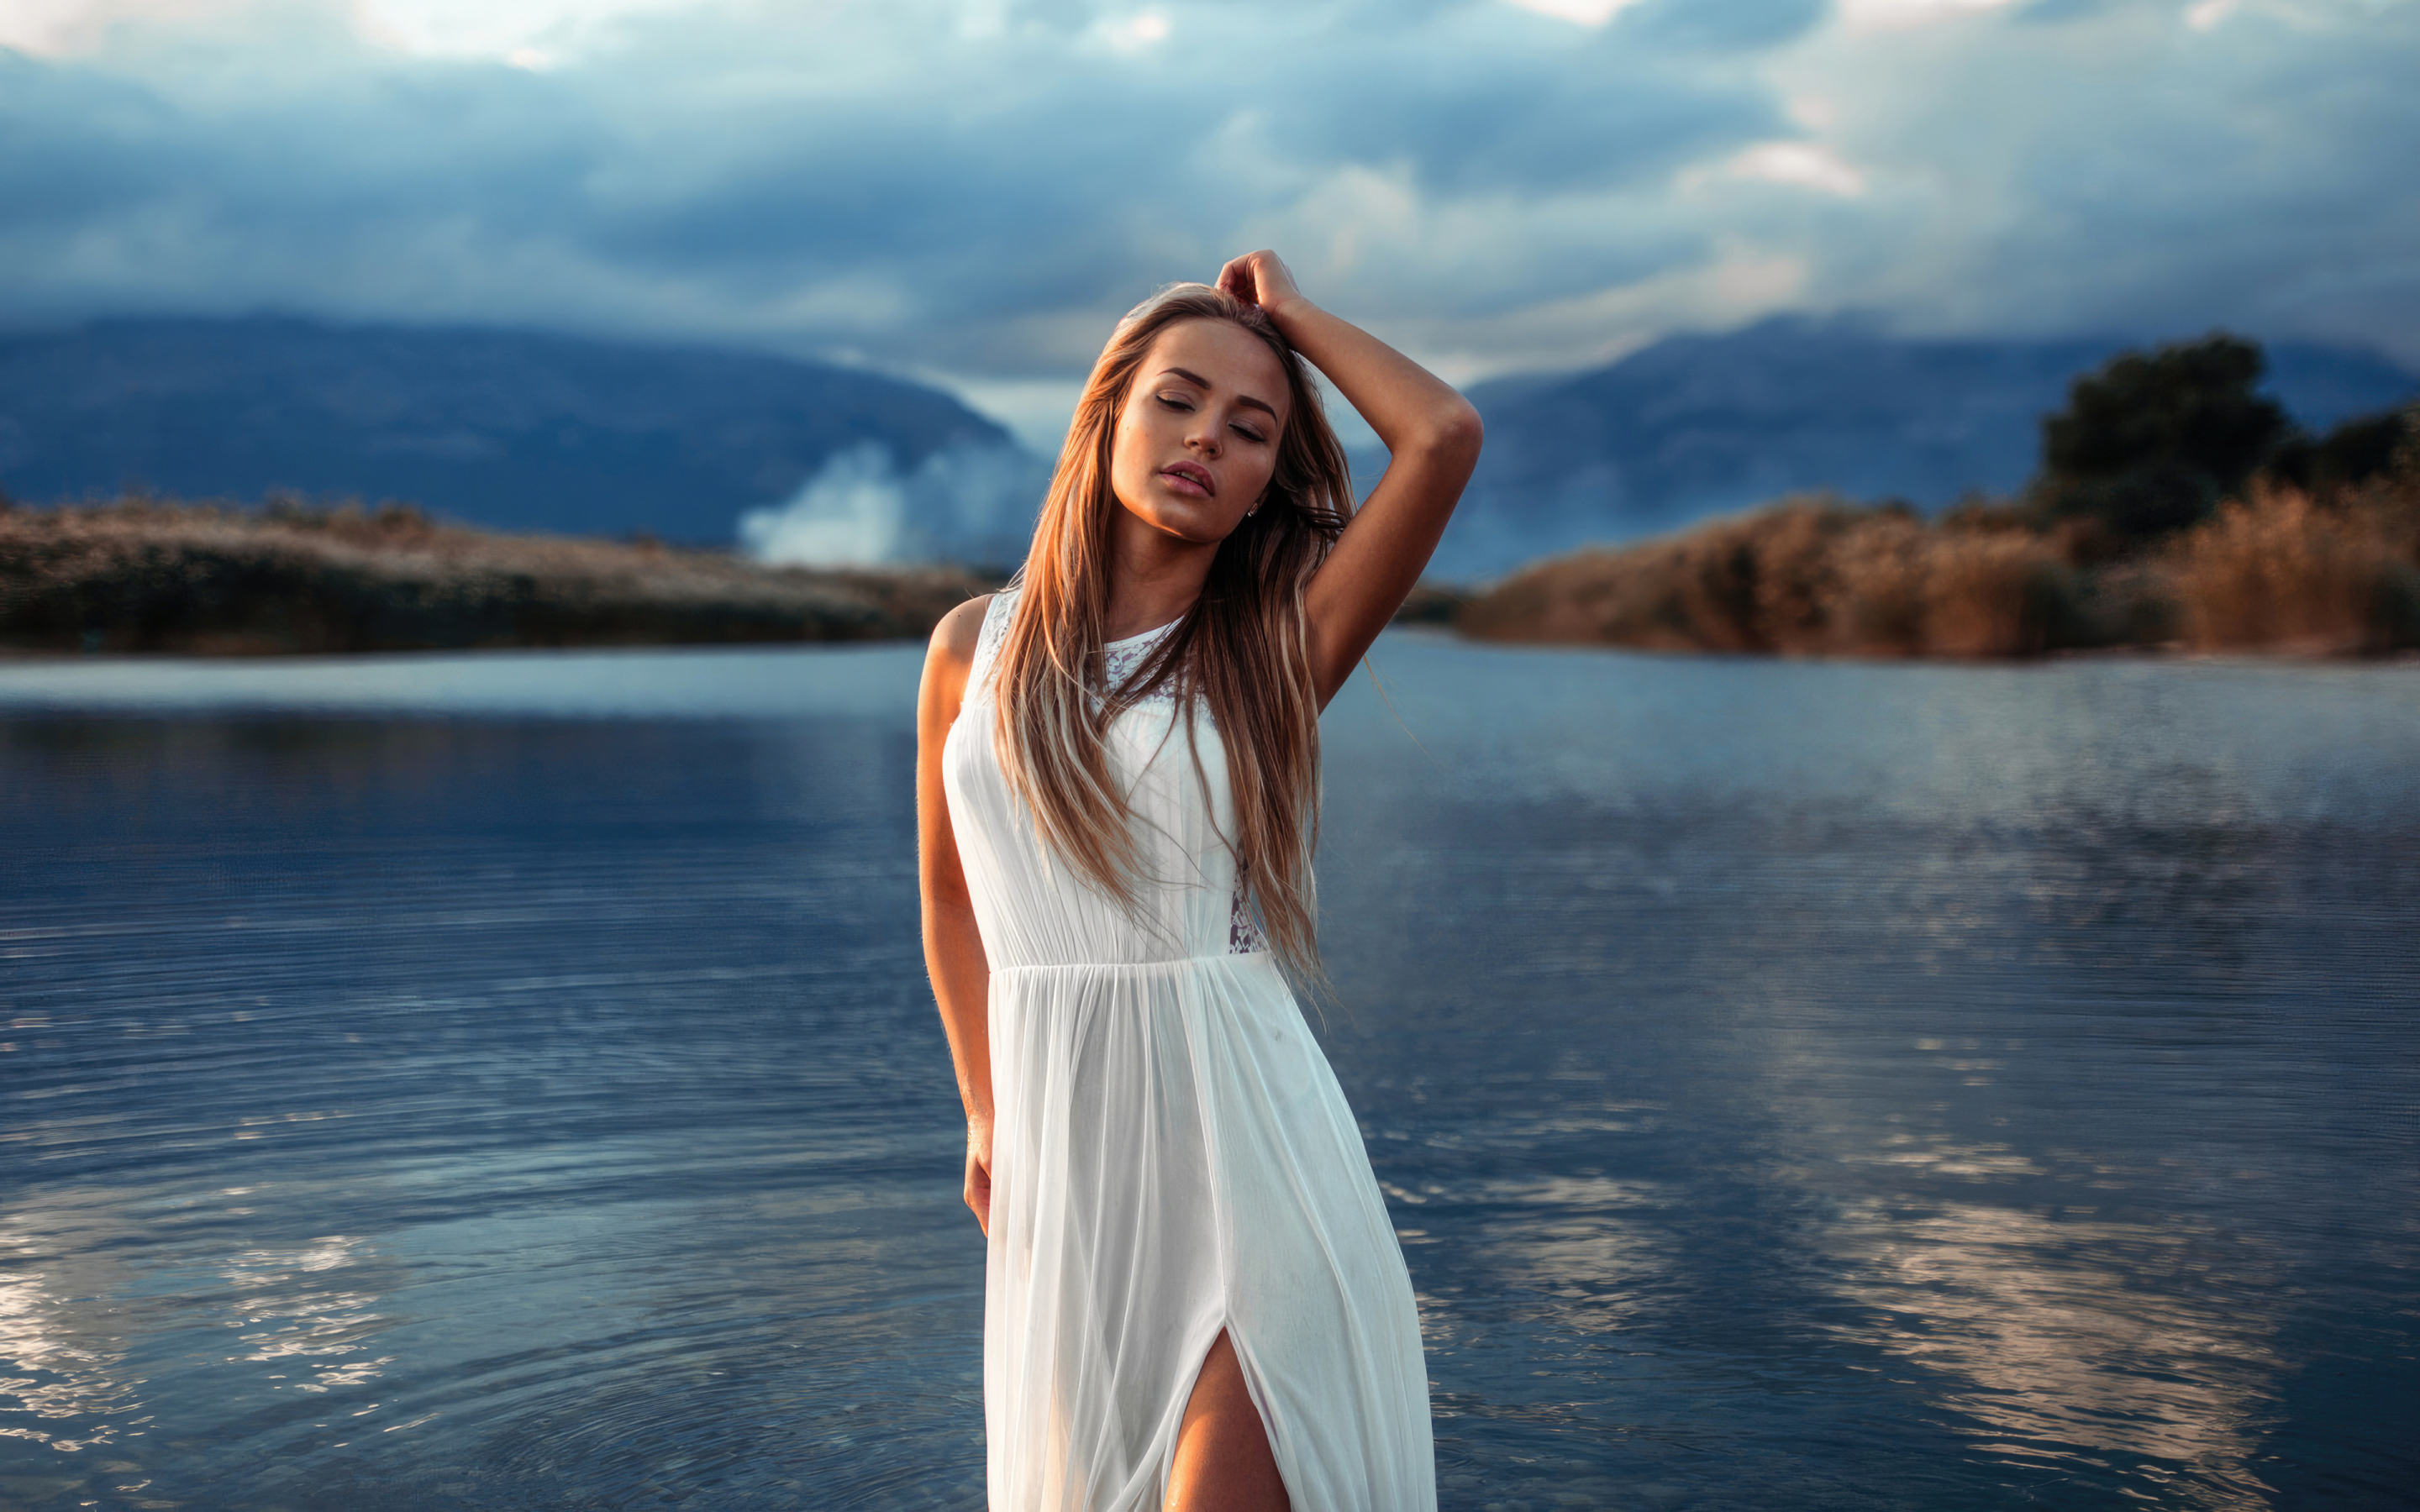 Maria Puchnina, white dress, outdoor at lake, 2880x1800 wallpaper